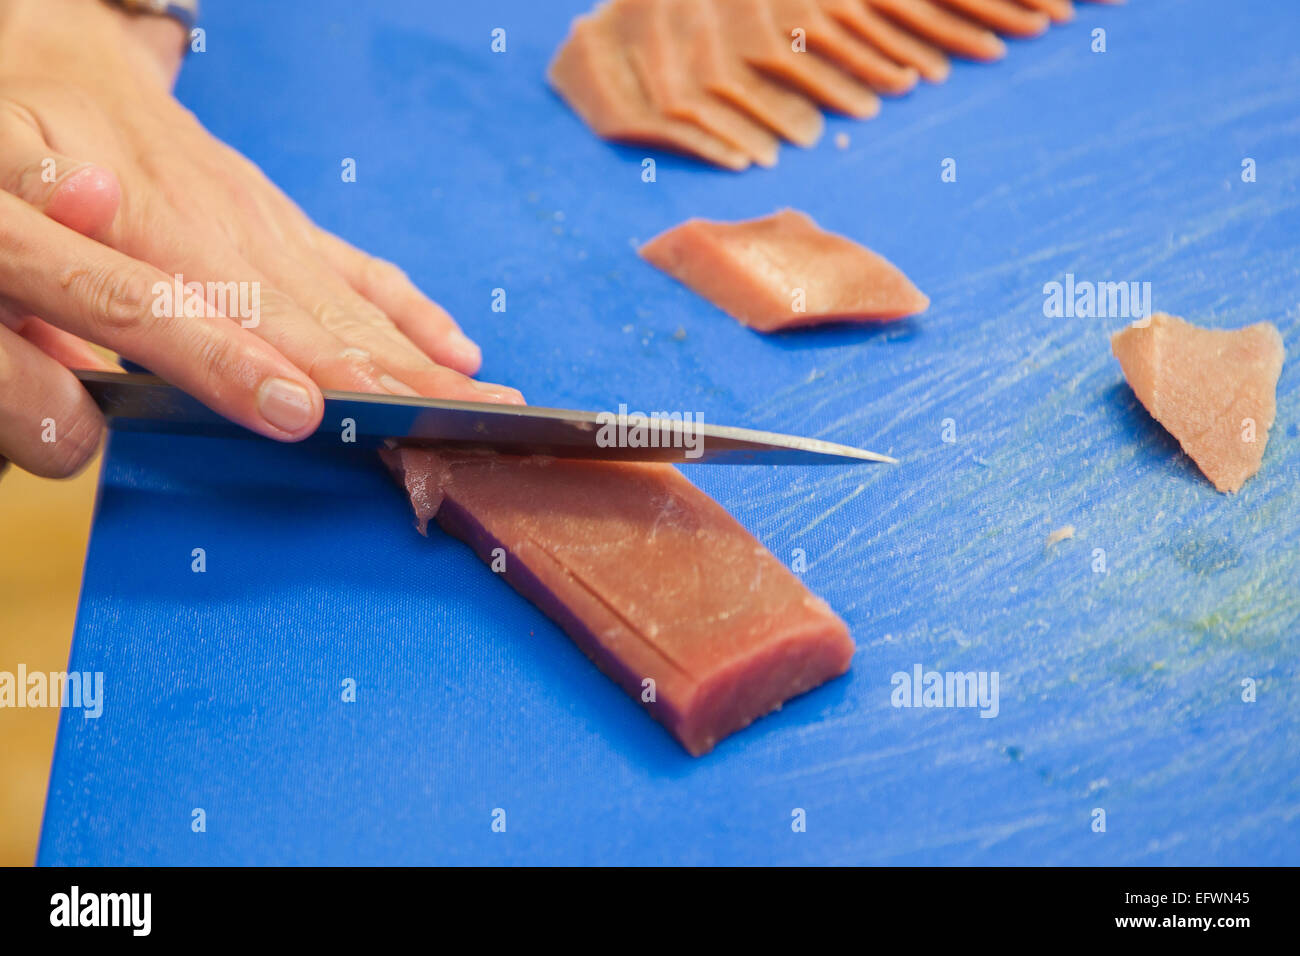 Steak de thon de coupe, le poisson de la préparation des matières premières Banque D'Images